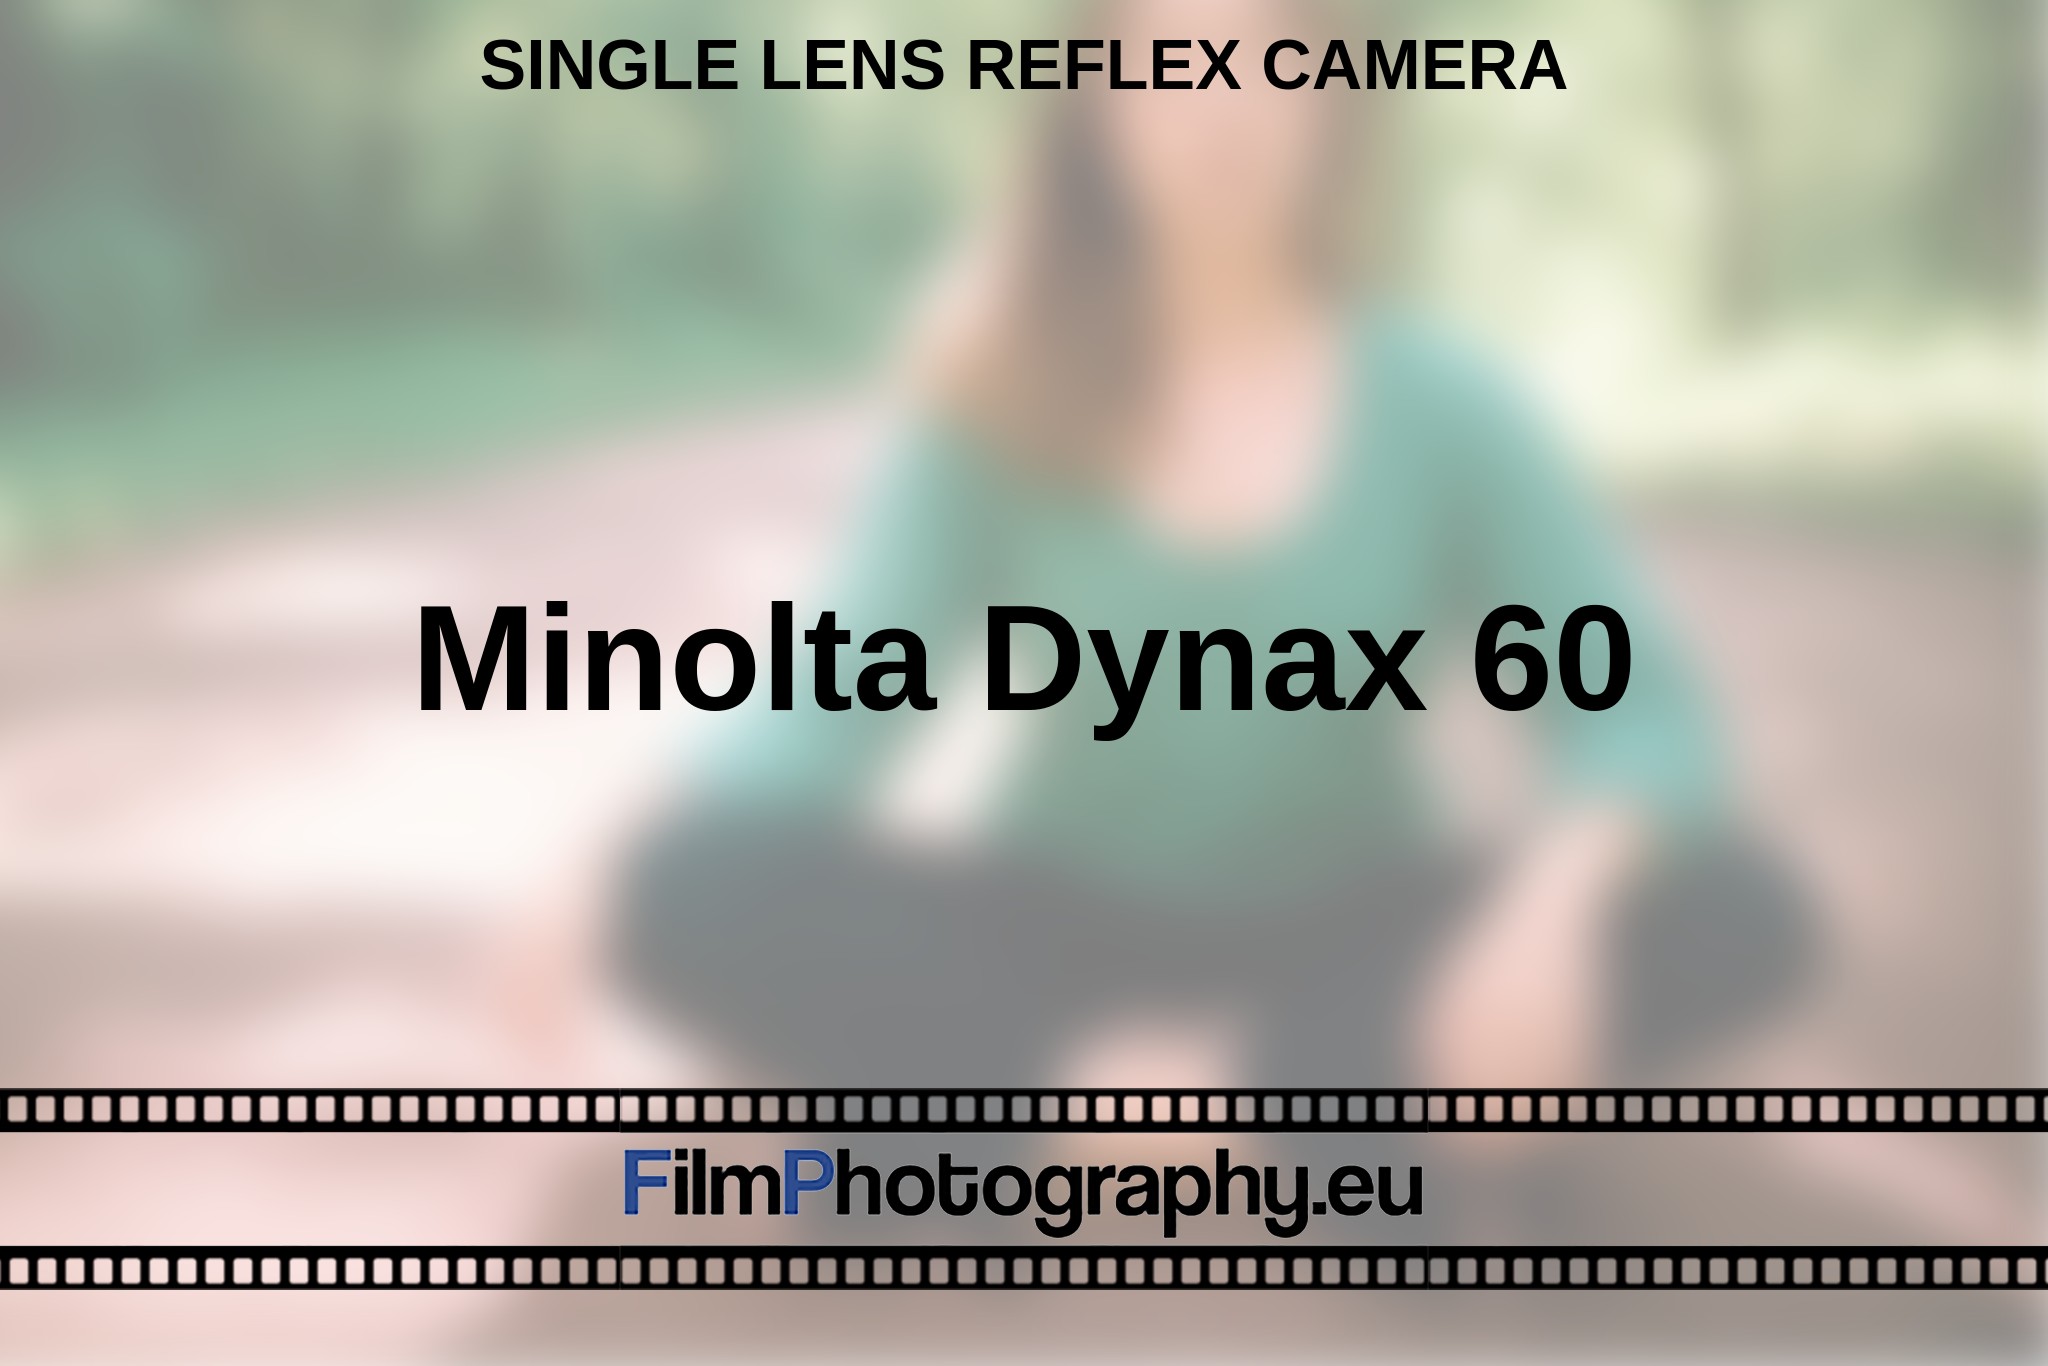 minolta-dynax-60-single-lens-reflex-camera-en-bnv.jpg